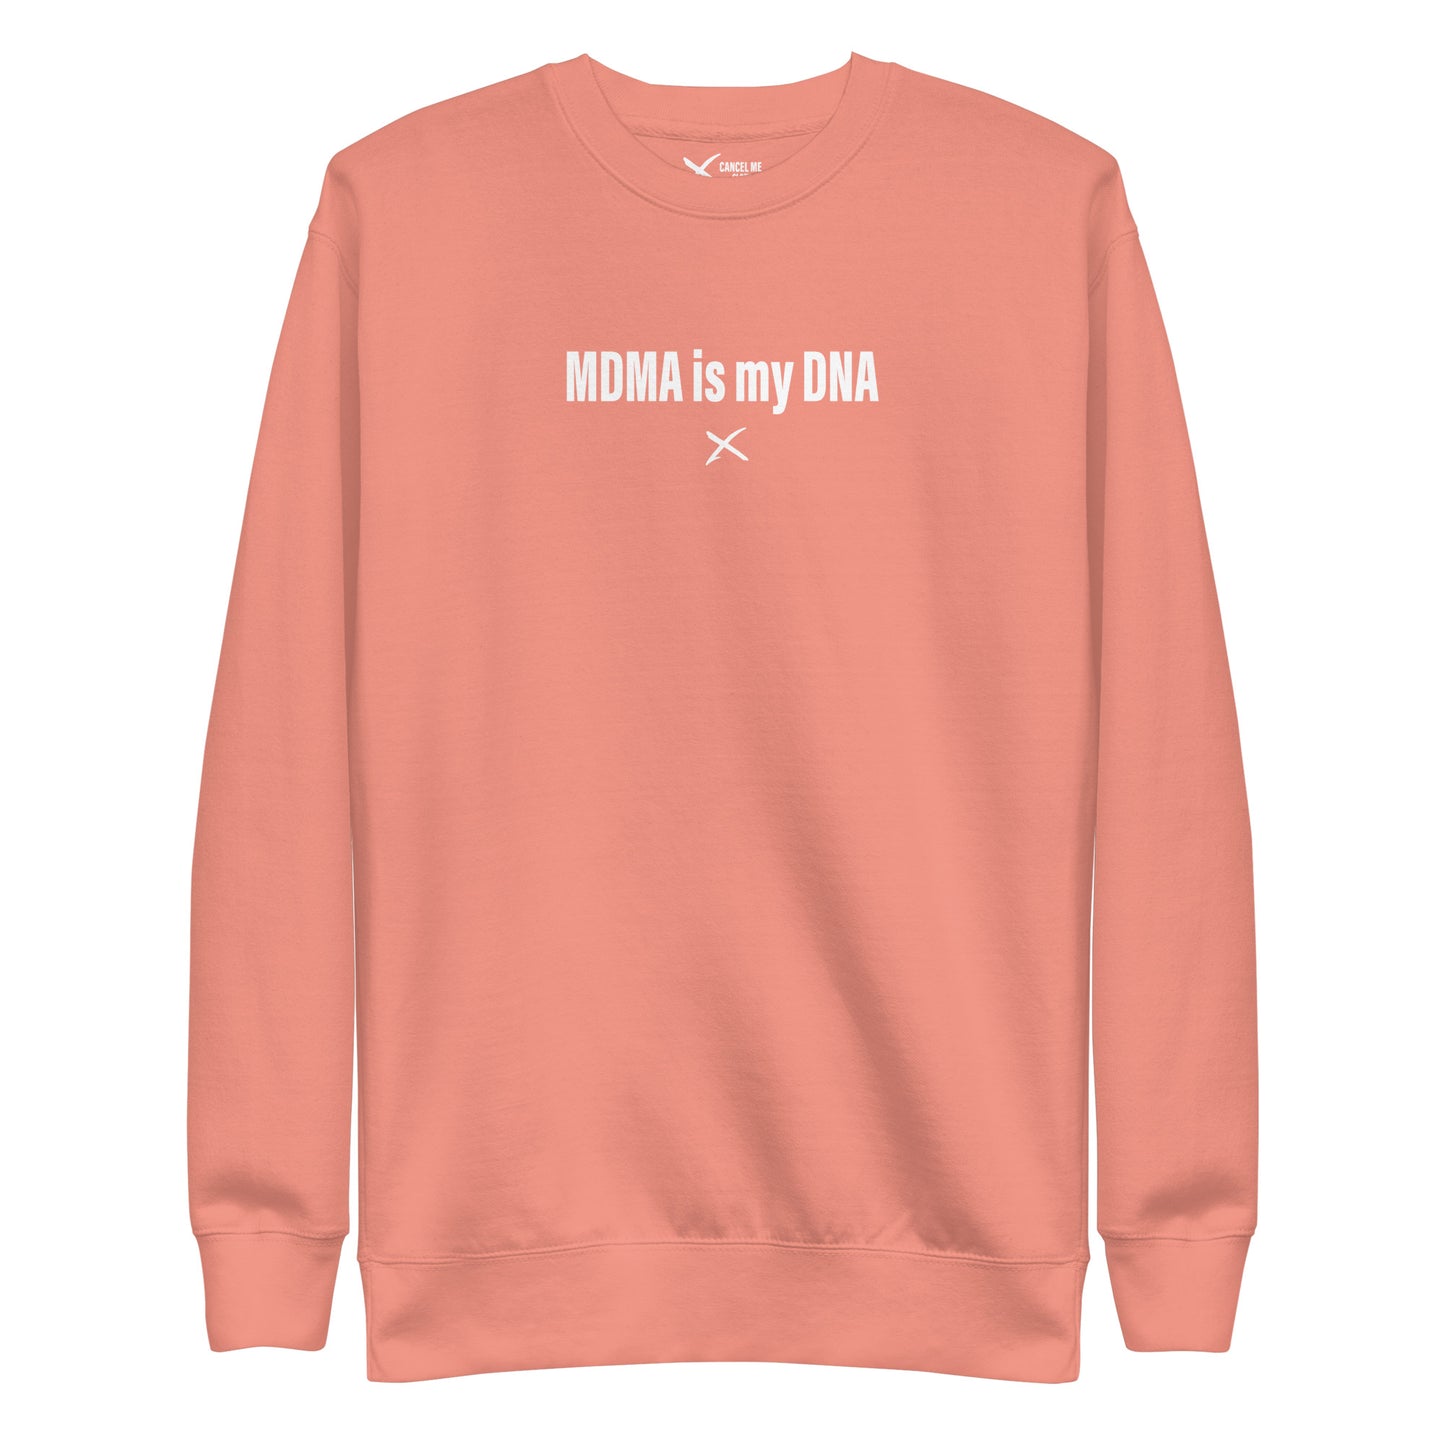 MDMA is my DNA - Sweatshirt